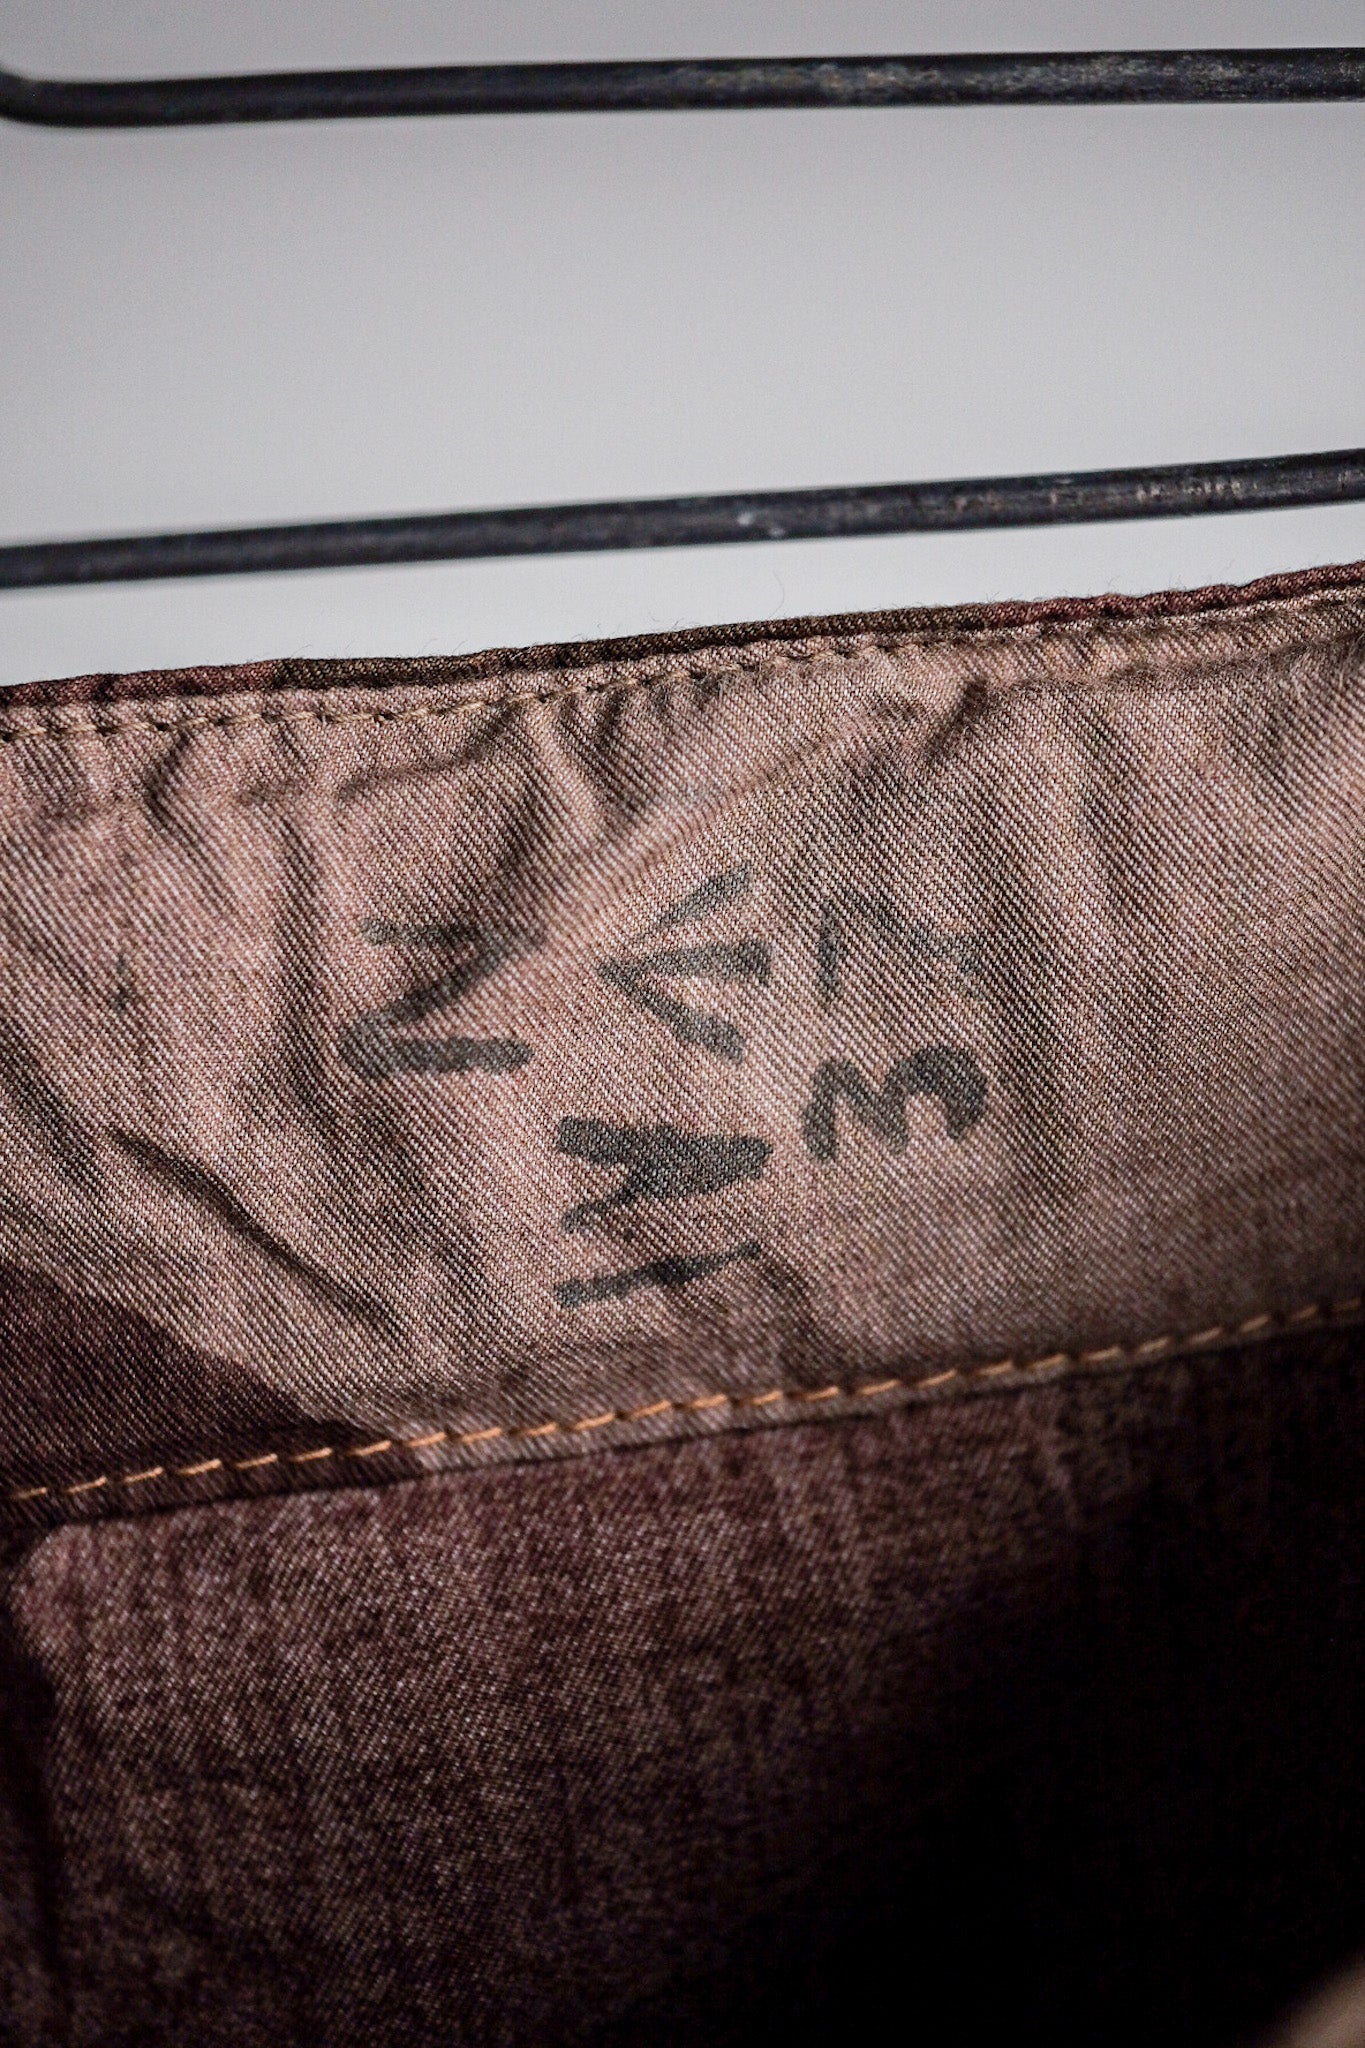 [〜40年代]英國陸軍SAS偽裝的防風褲。2“死庫存”